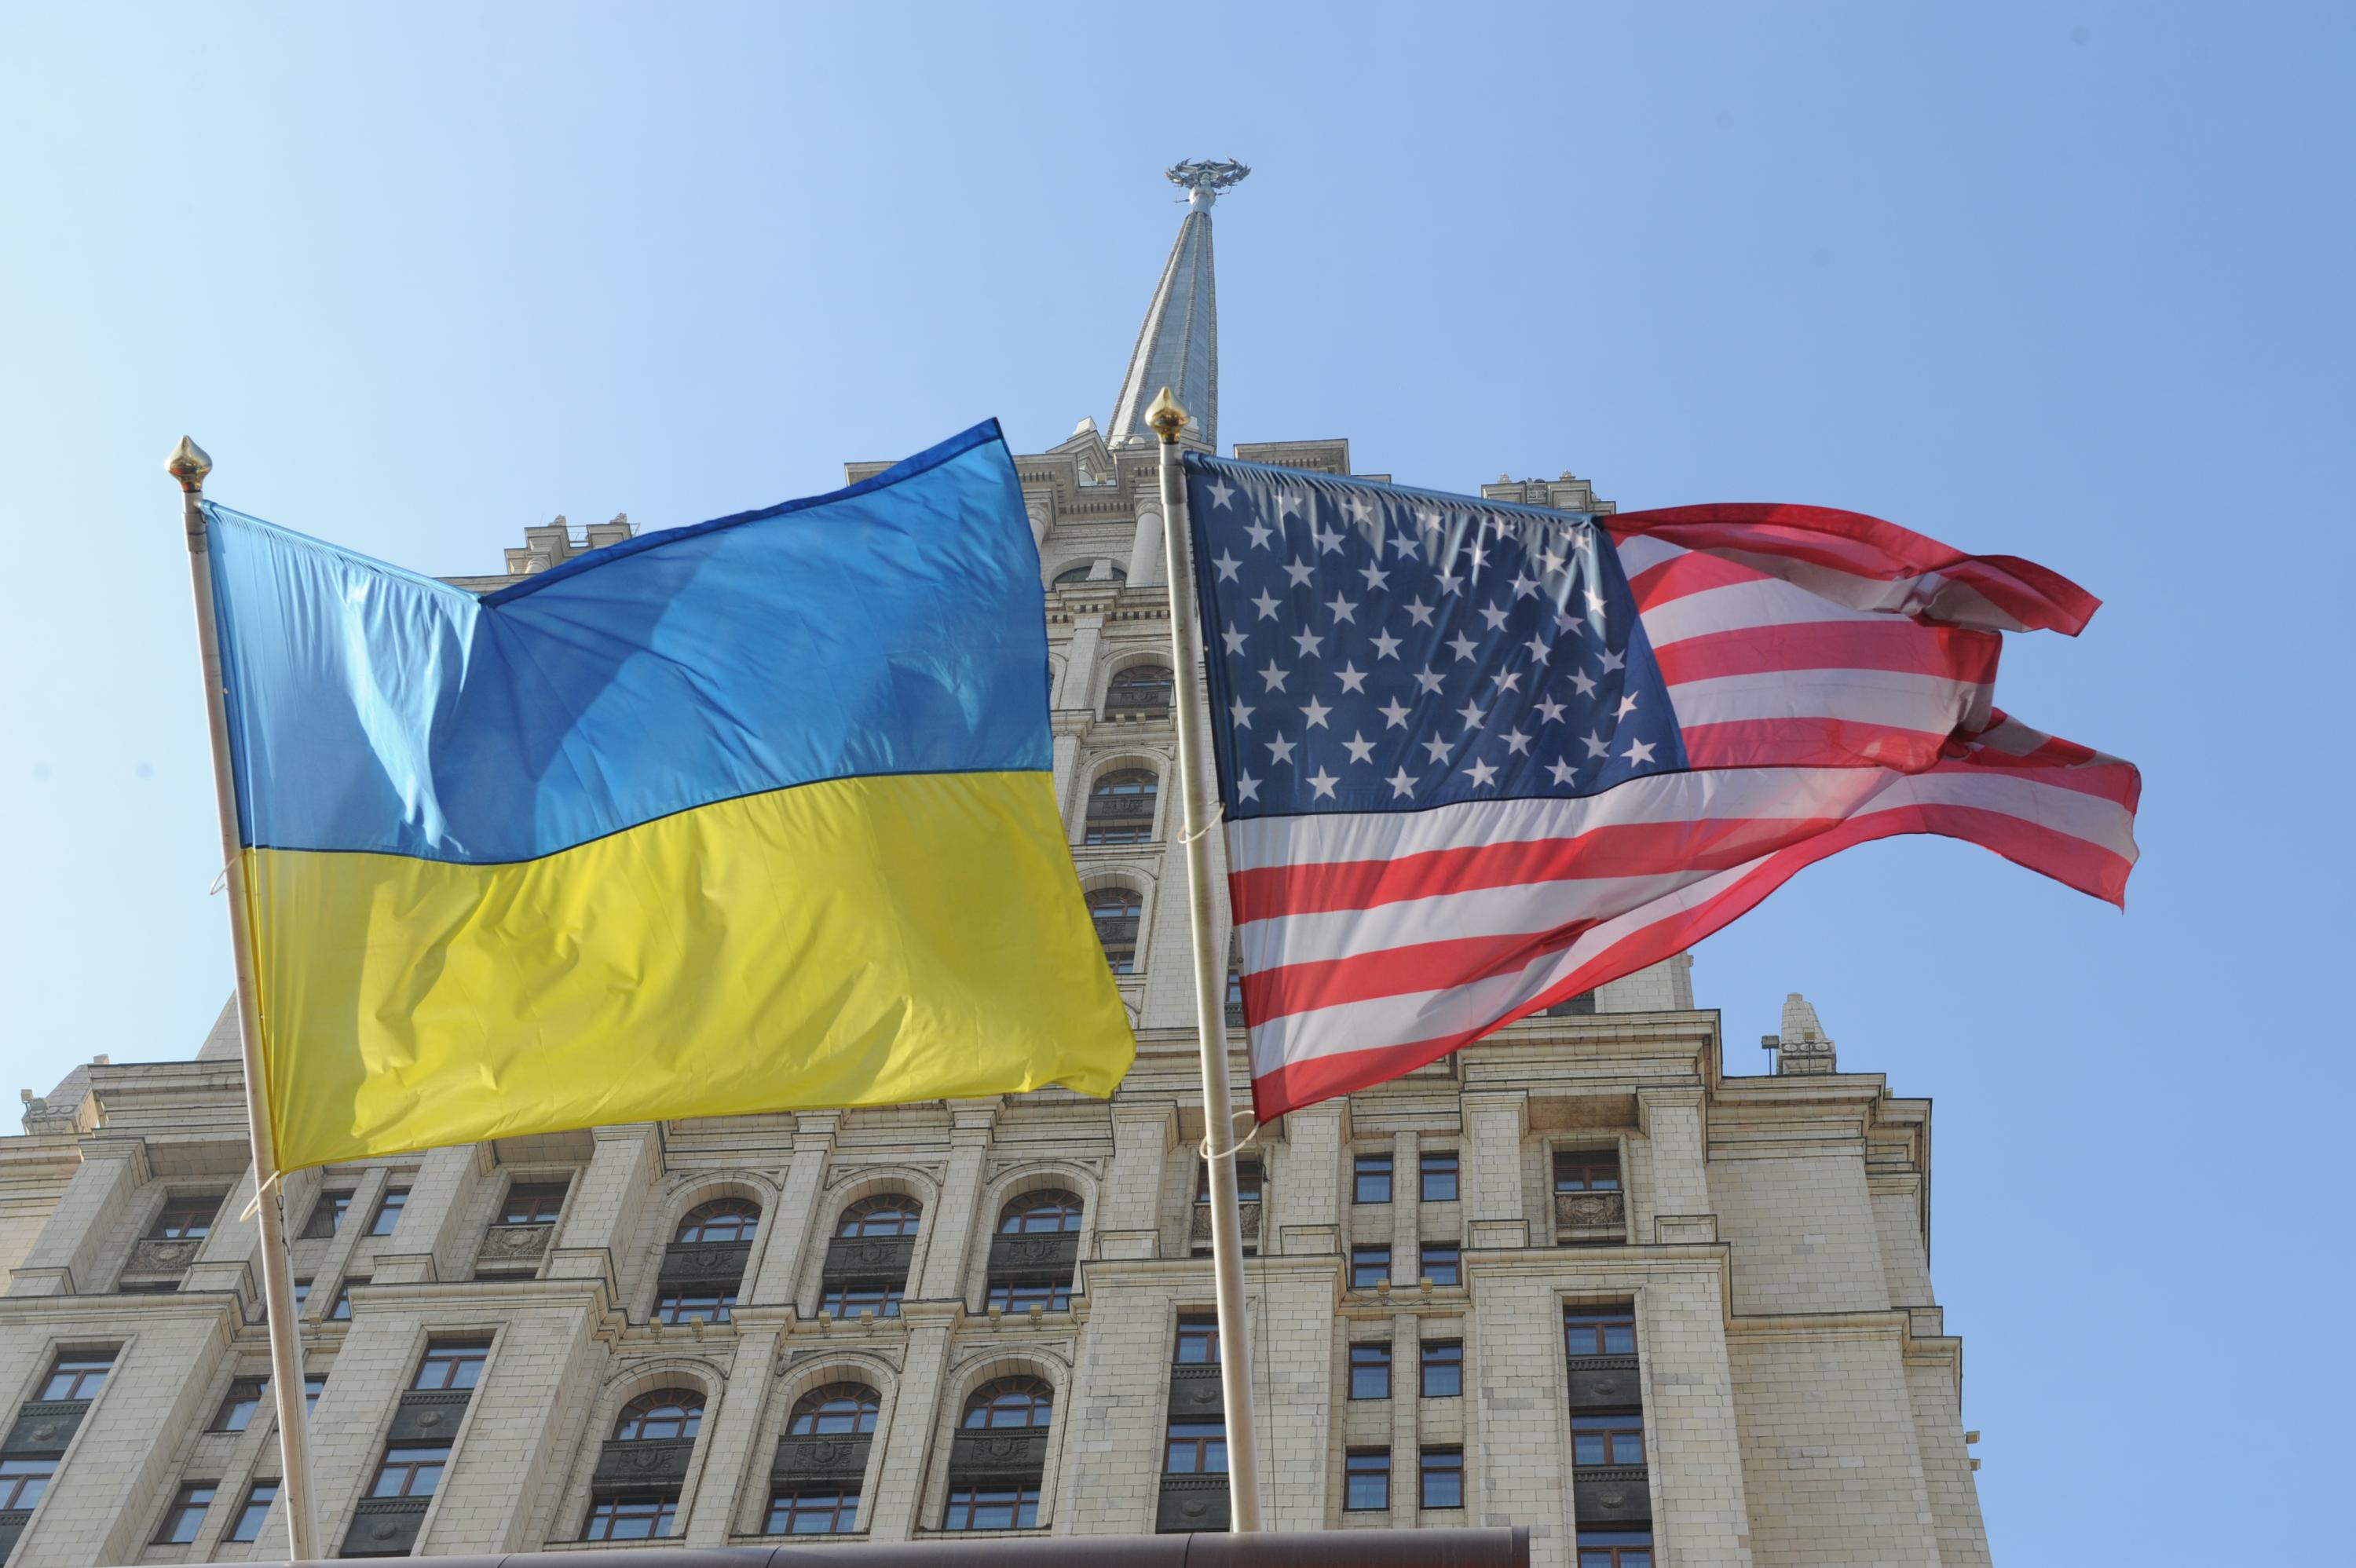 ABŞ Ukraynanı Türkmənistandan 24 dəfə çox “istəyir” - STATİSTİKA